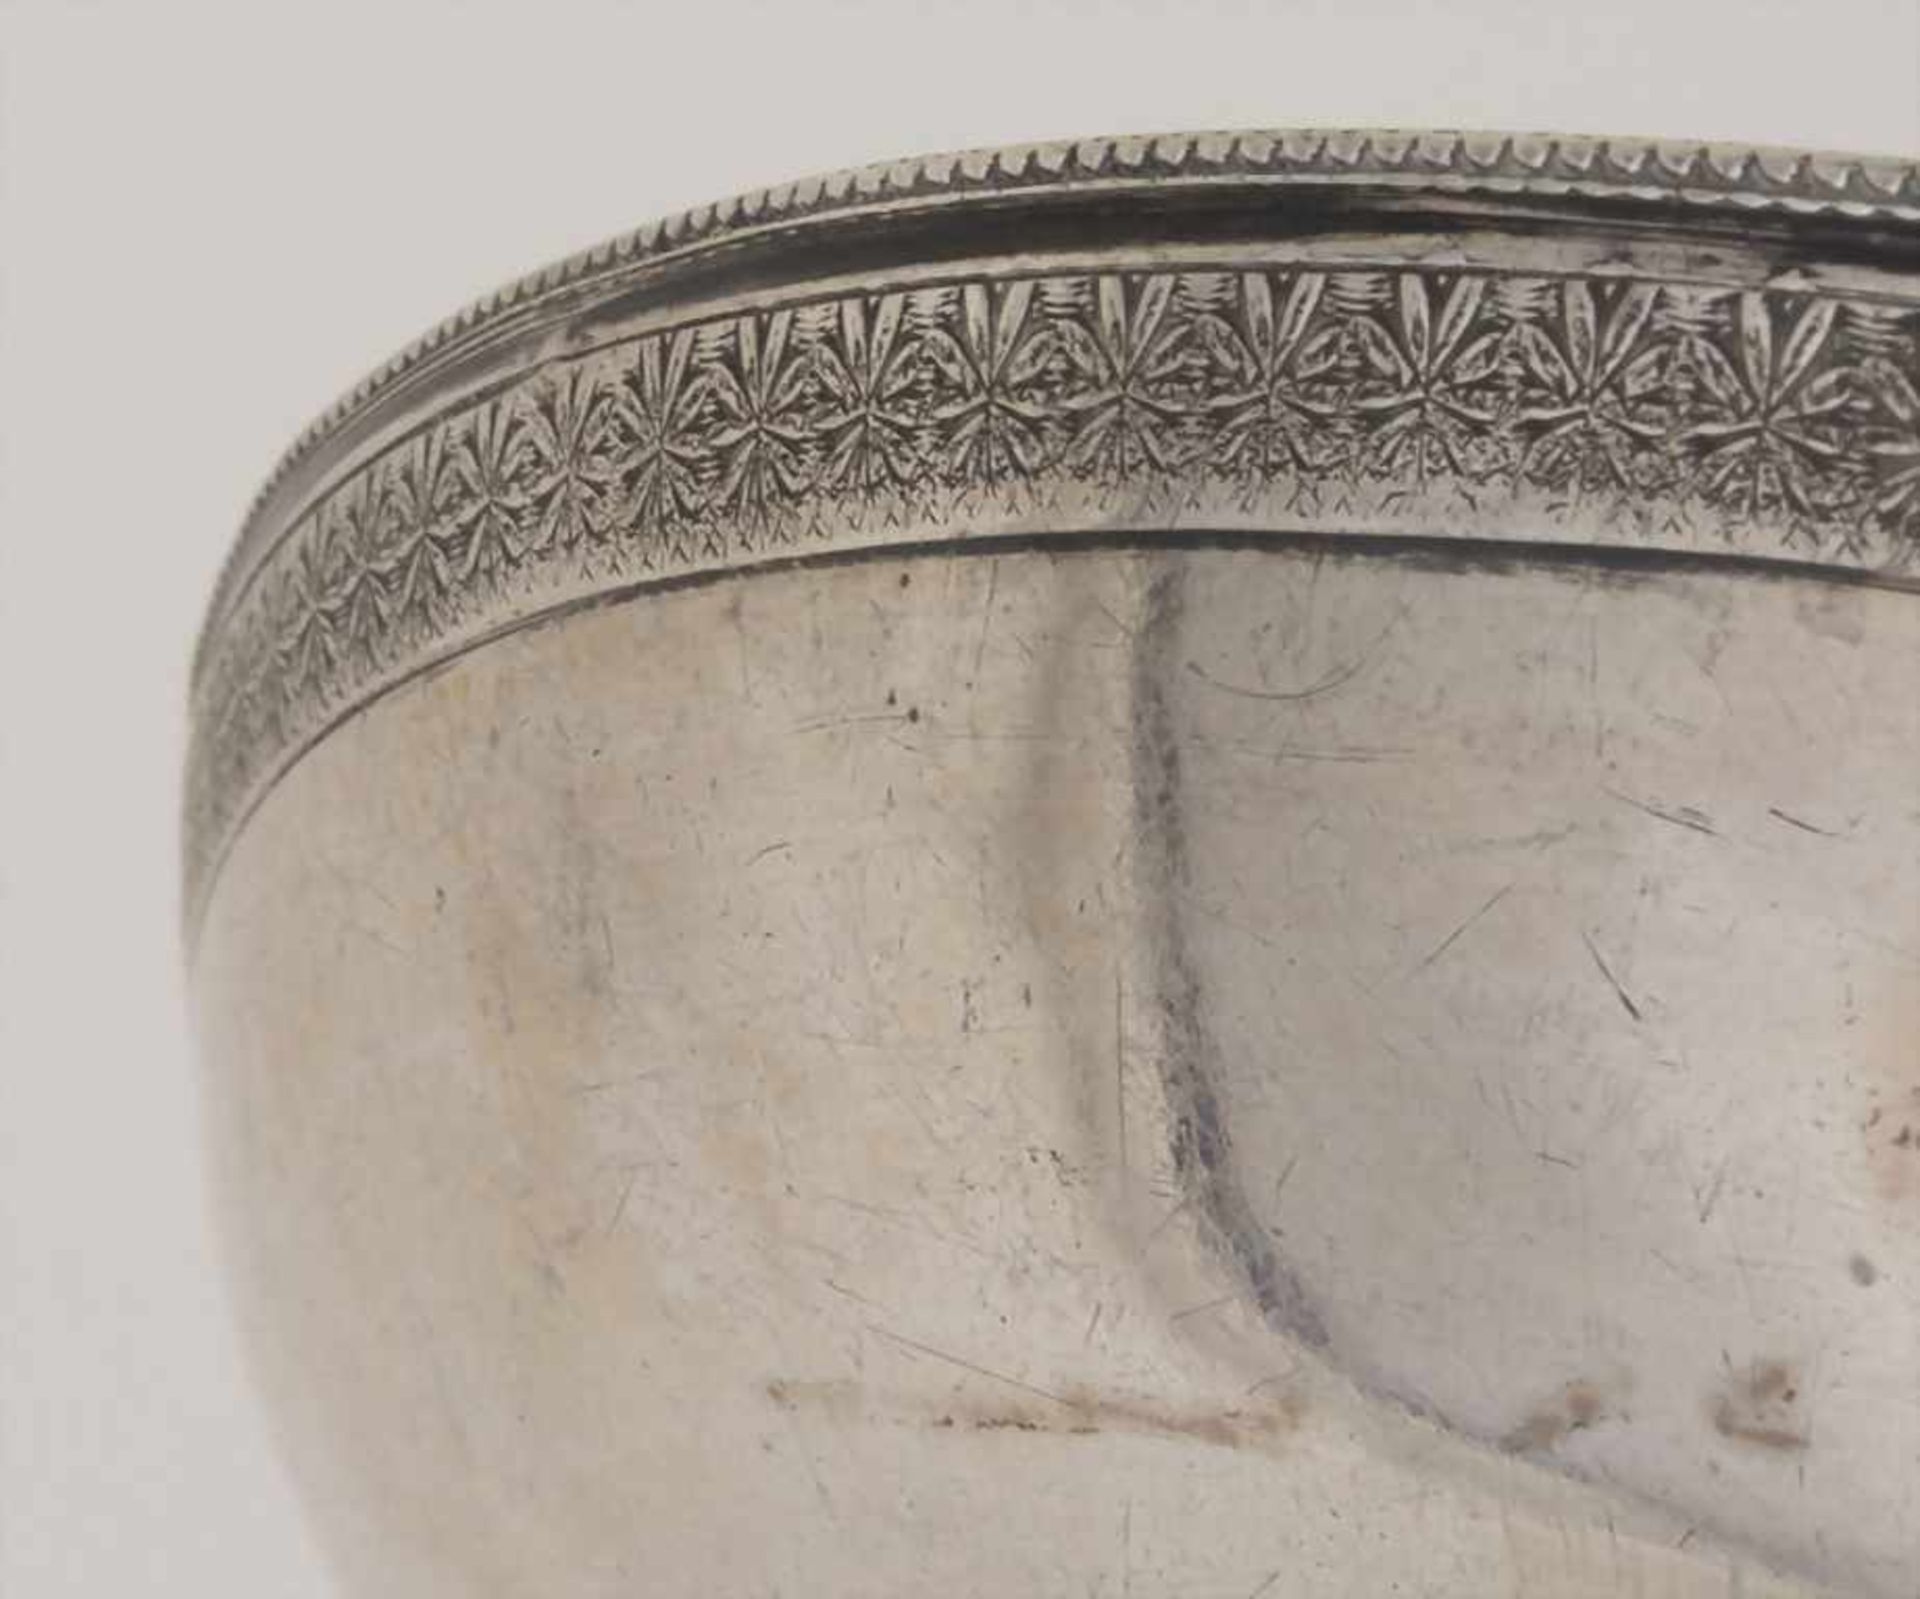 Runde Platte / A round platter, osmanisch / Ottoman, 19. Jh.Material: Silber 800, Tughra/Tugrat, - Bild 6 aus 7